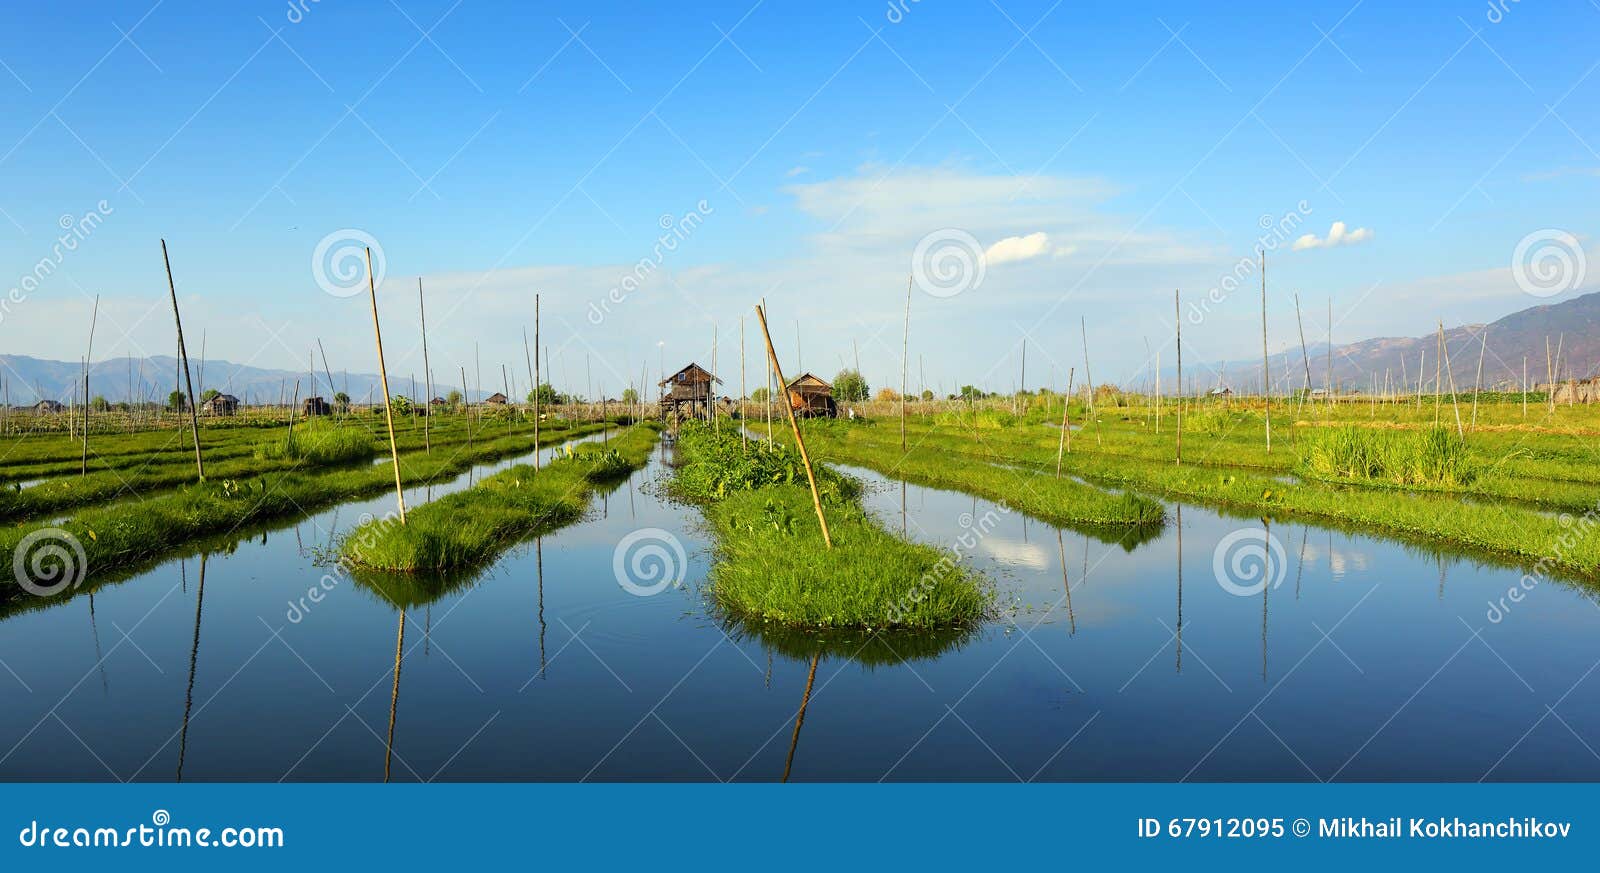 floating gardens on inle lake in myanmar